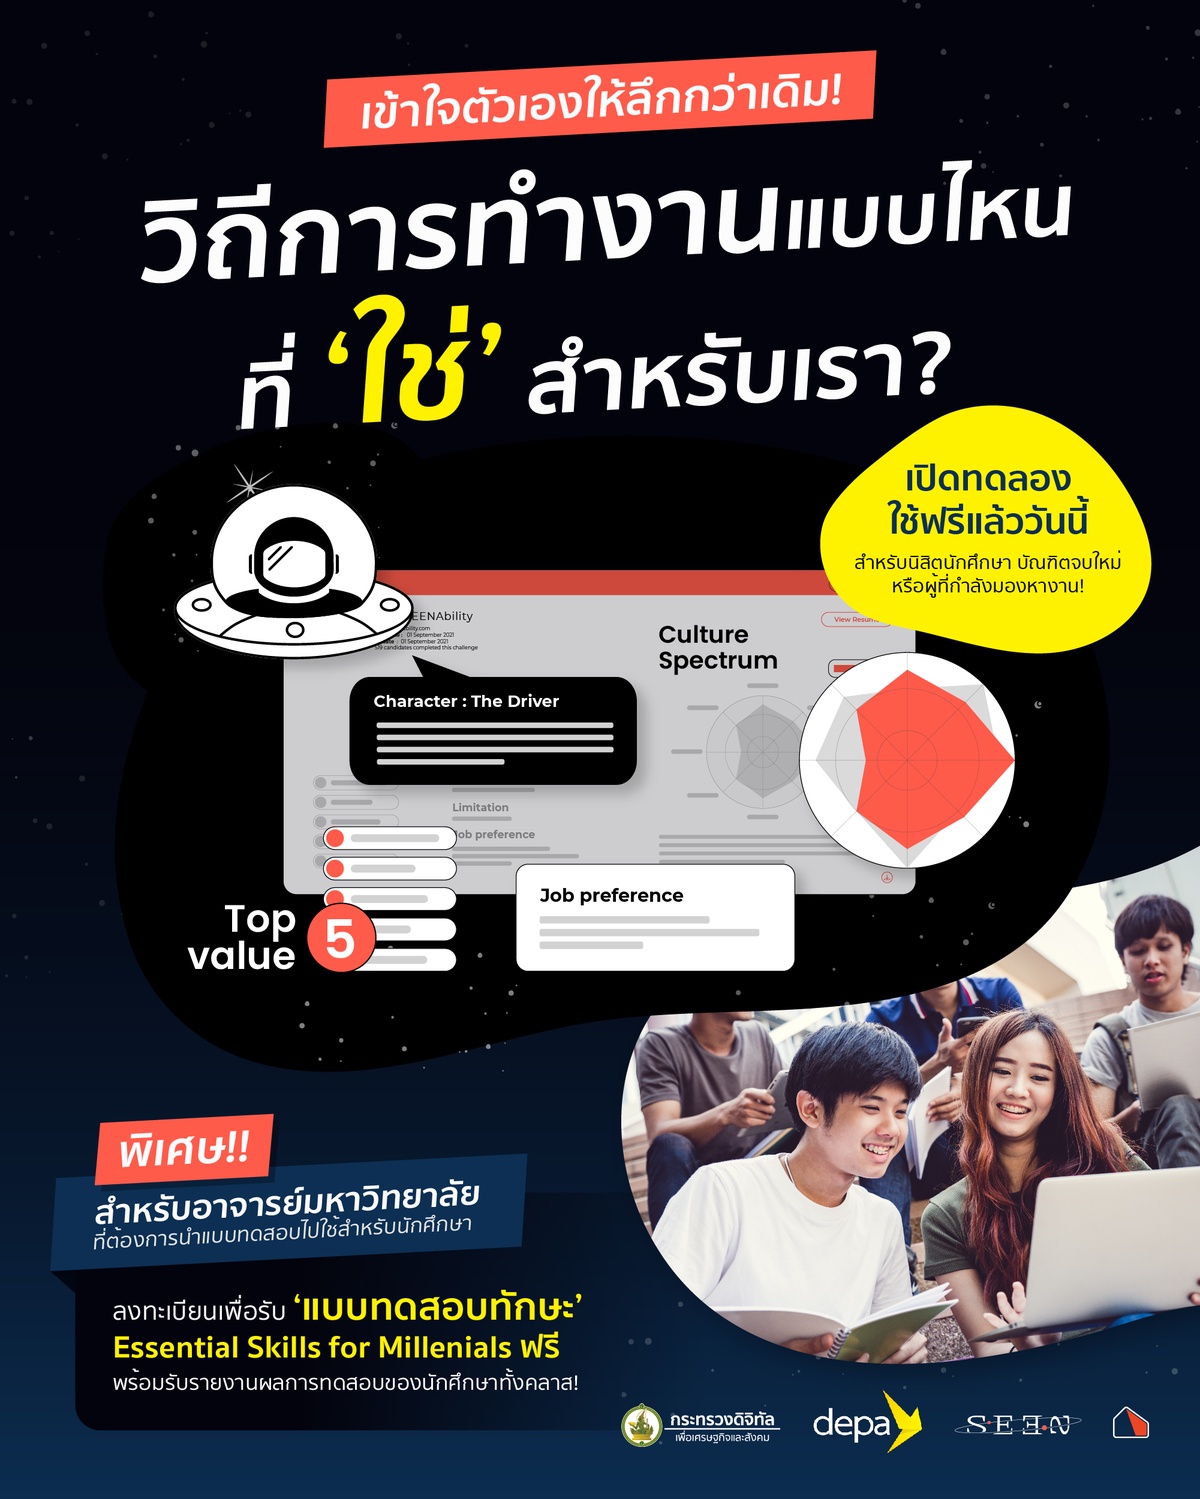 BASE Playhouse จับมือกับ depa กับเทคโนโลยีใหม่ 'SEEN' ช่วยนักศึกษาไทยหางานที่ ใช่ ได้มากกว่าเดิม